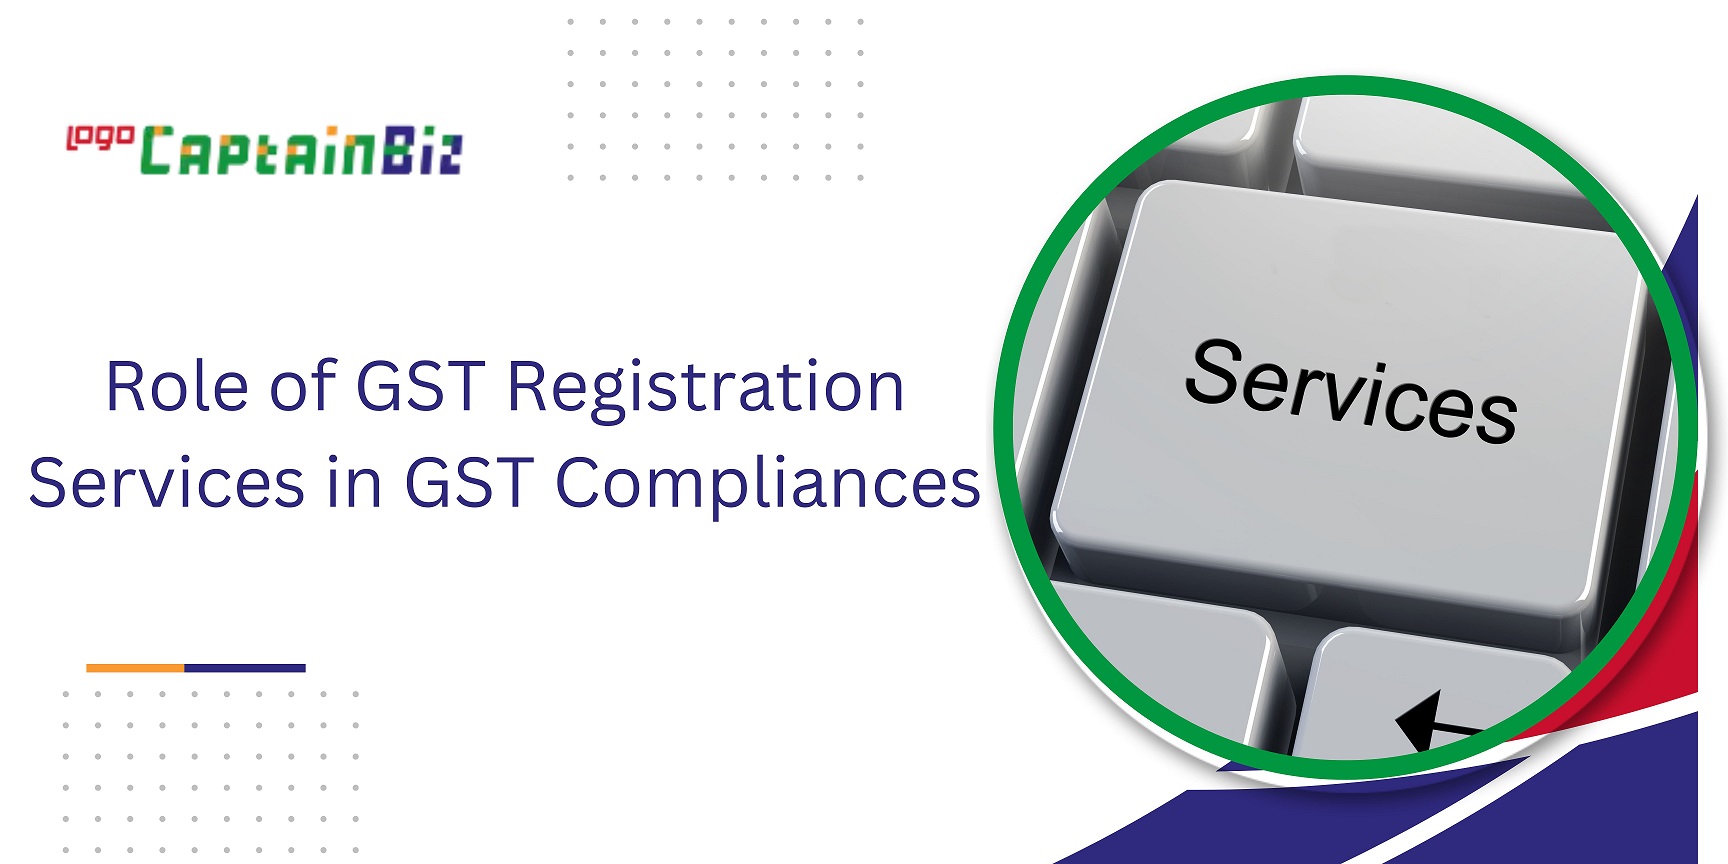 captainbiz role of gst registration services in gst compliances